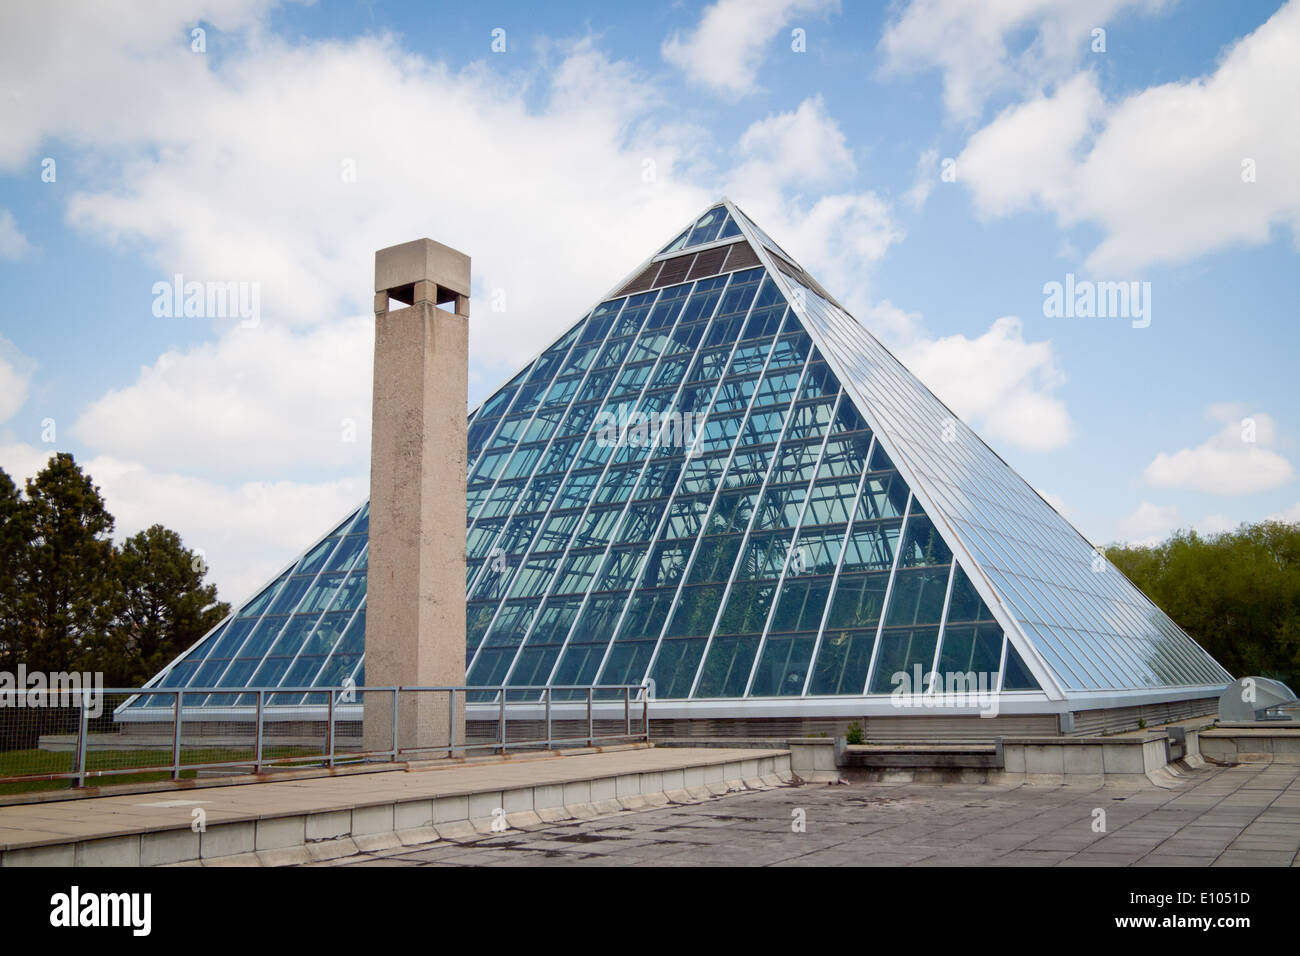 Die markante Glaspyramiden des Muttart Conservatory, ein botanischer Garten und bekannte Wahrzeichen von Edmonton, Alberta, Kanada. Stockfoto